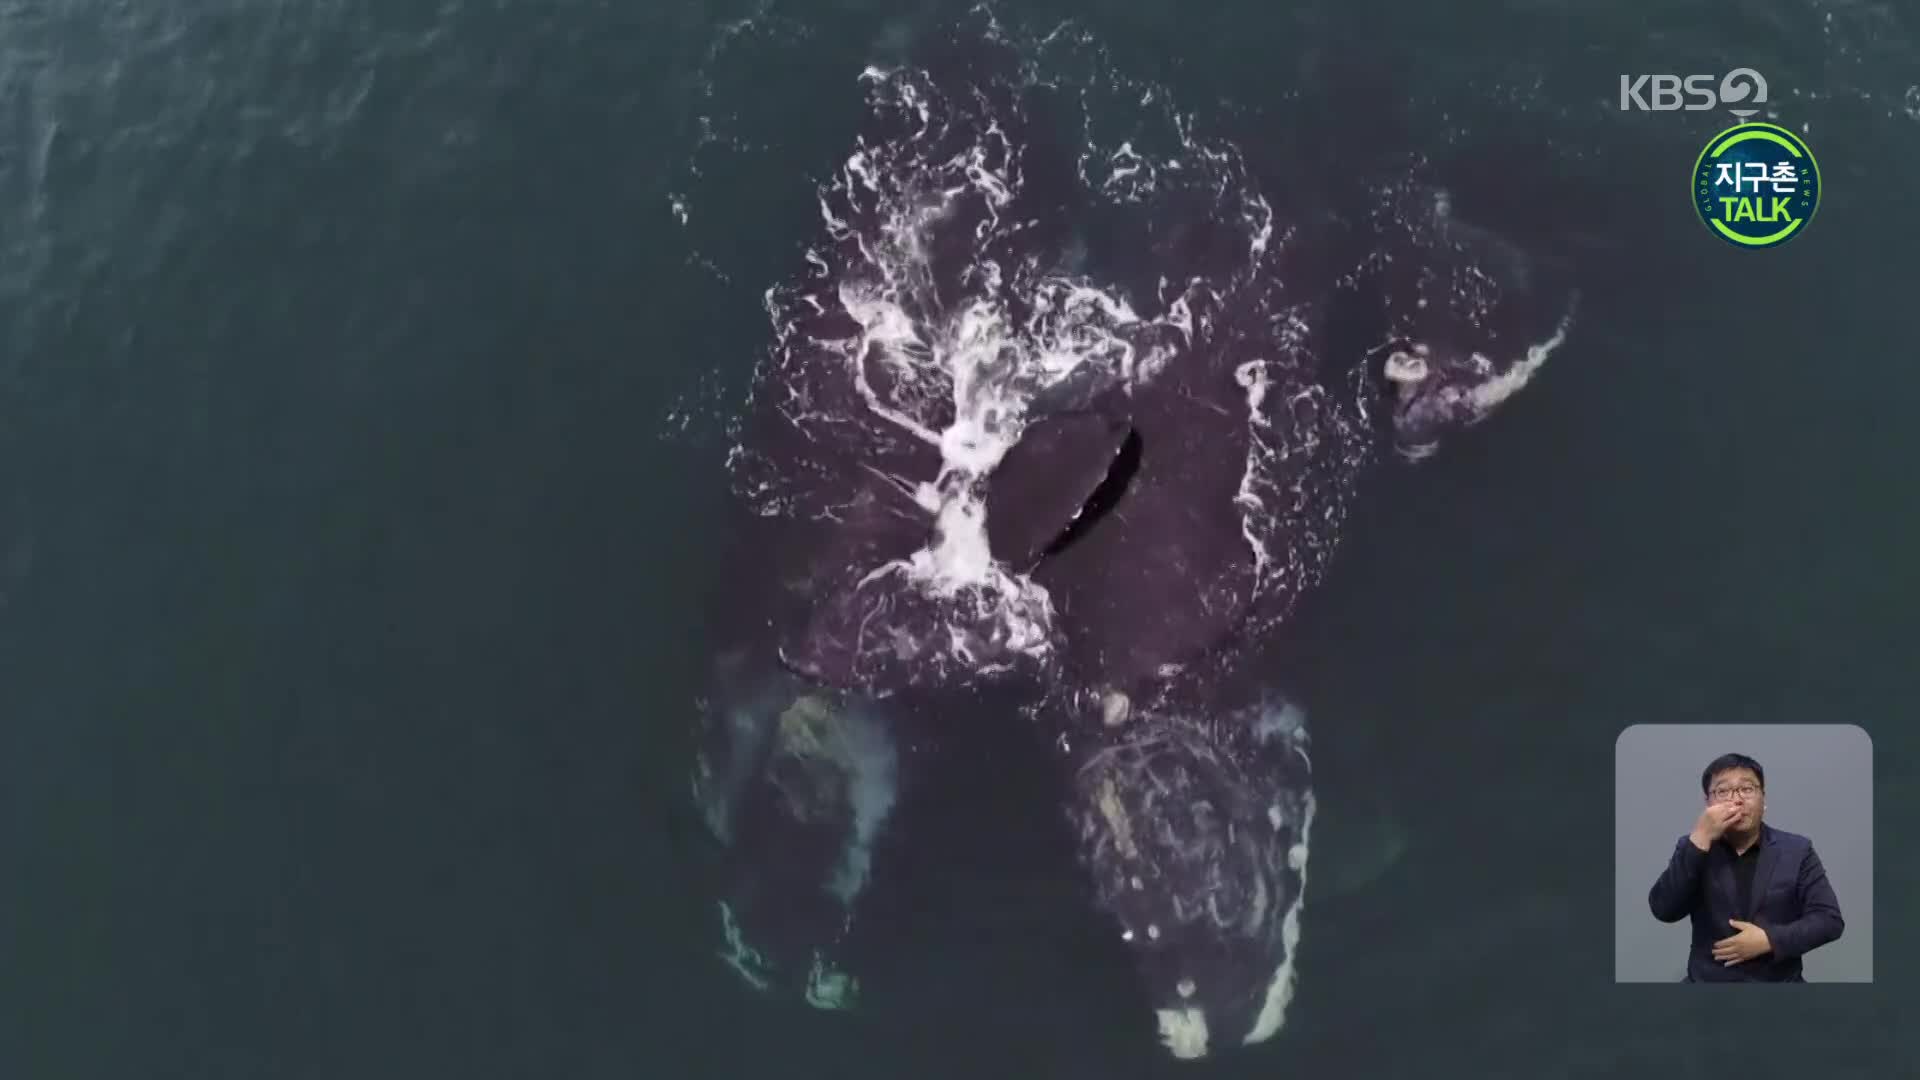 [지구촌 Talk] 멸종위기종 참고래 두 마리의 ‘포옹’